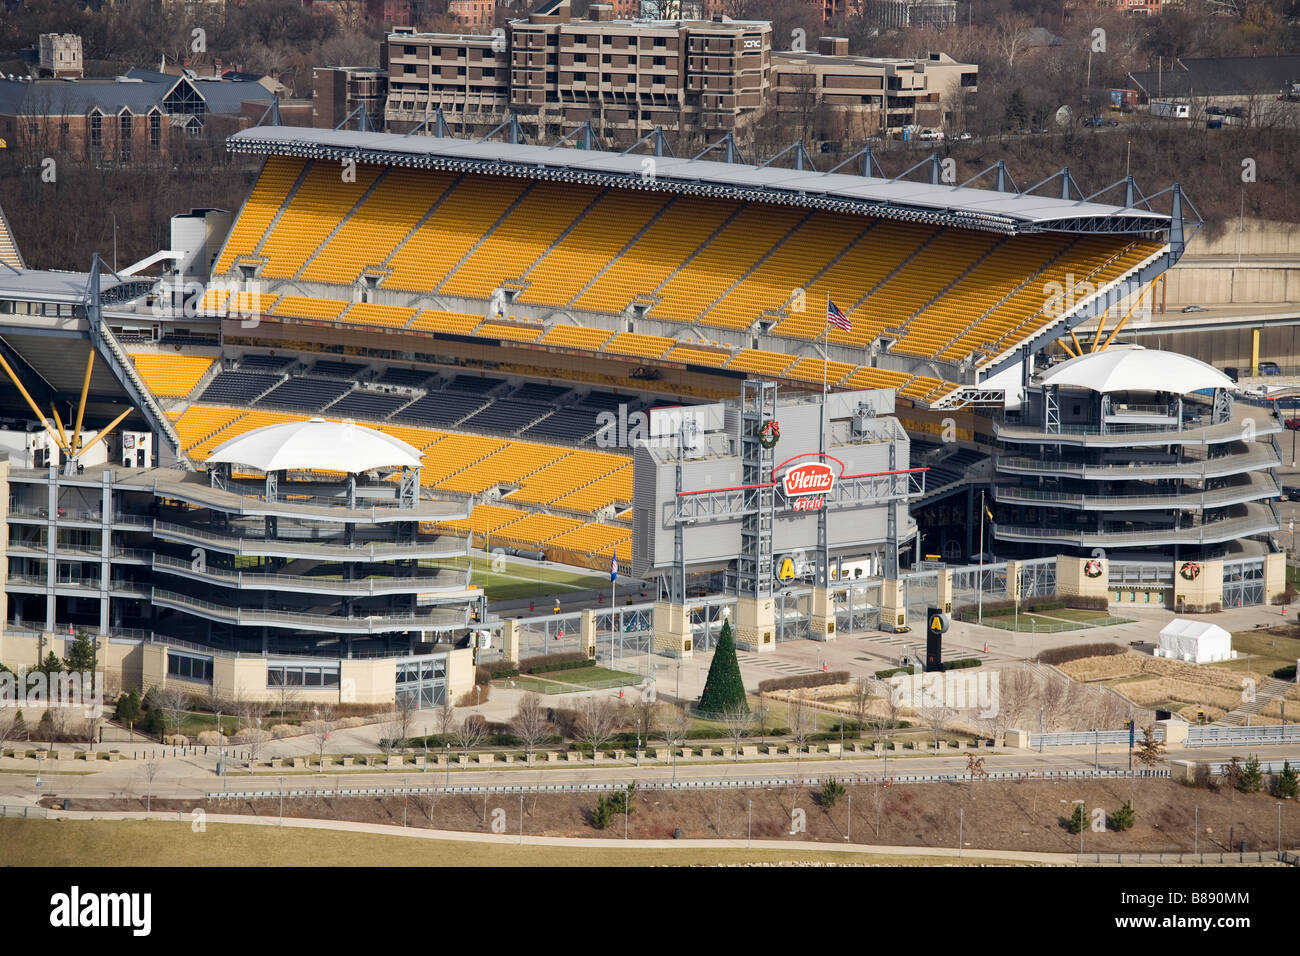 Avis de Heinz Field Stadium accueil de l'équipe de football américain des Steelers de Pittsburgh Banque D'Images